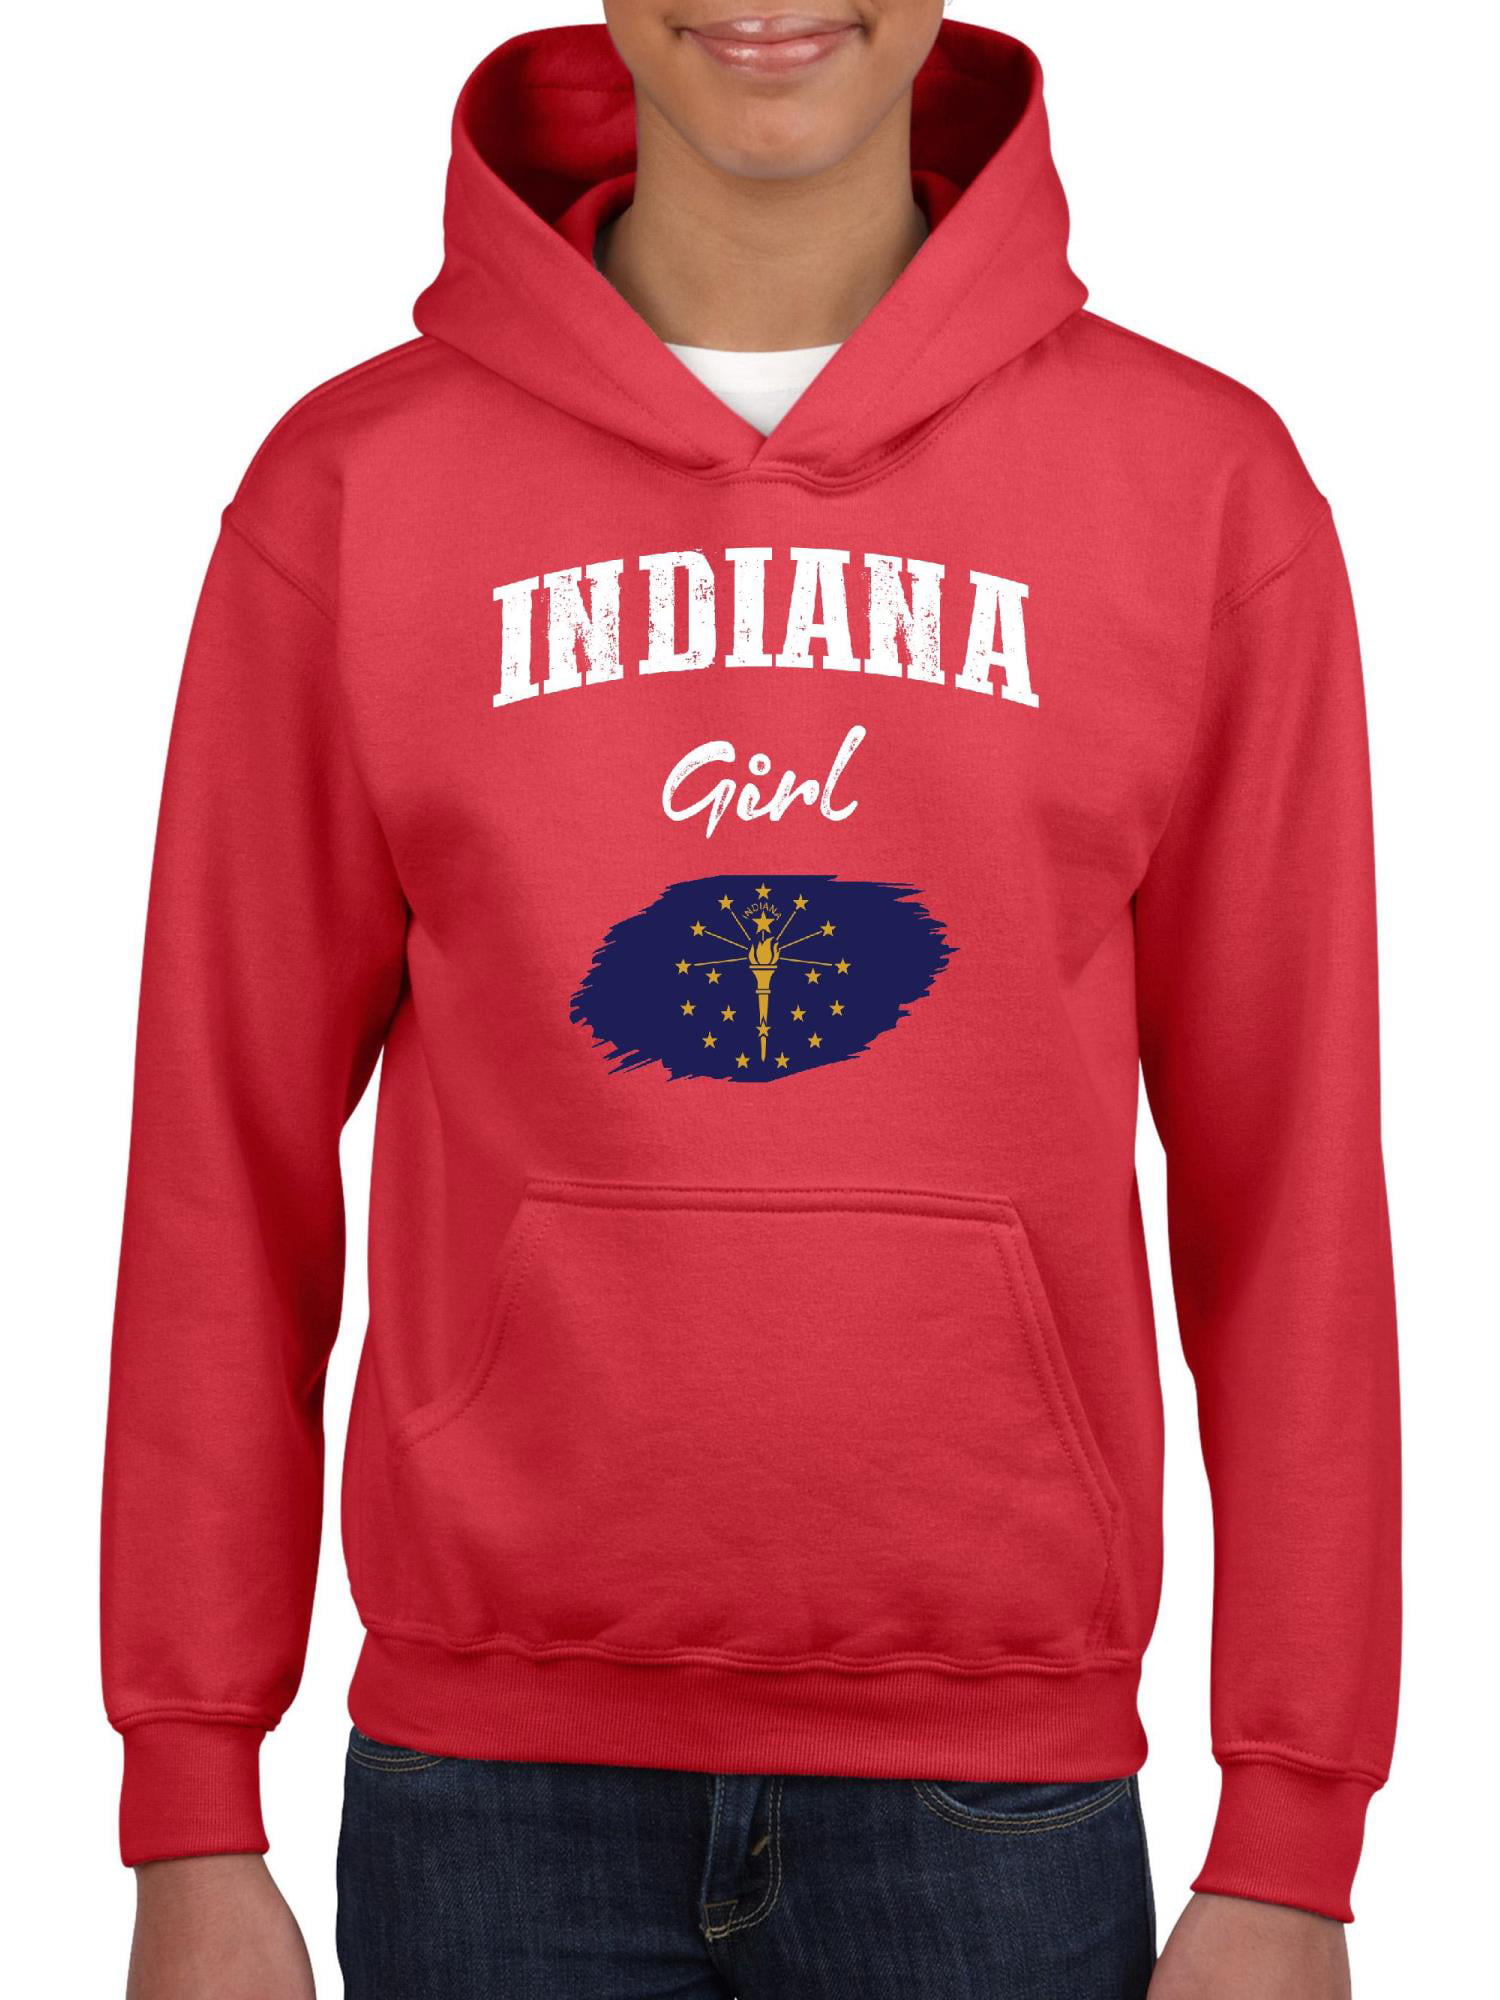 NIB - Big Girls Hoodies and Sweatshirts - Indiana Girl - Walmart.com